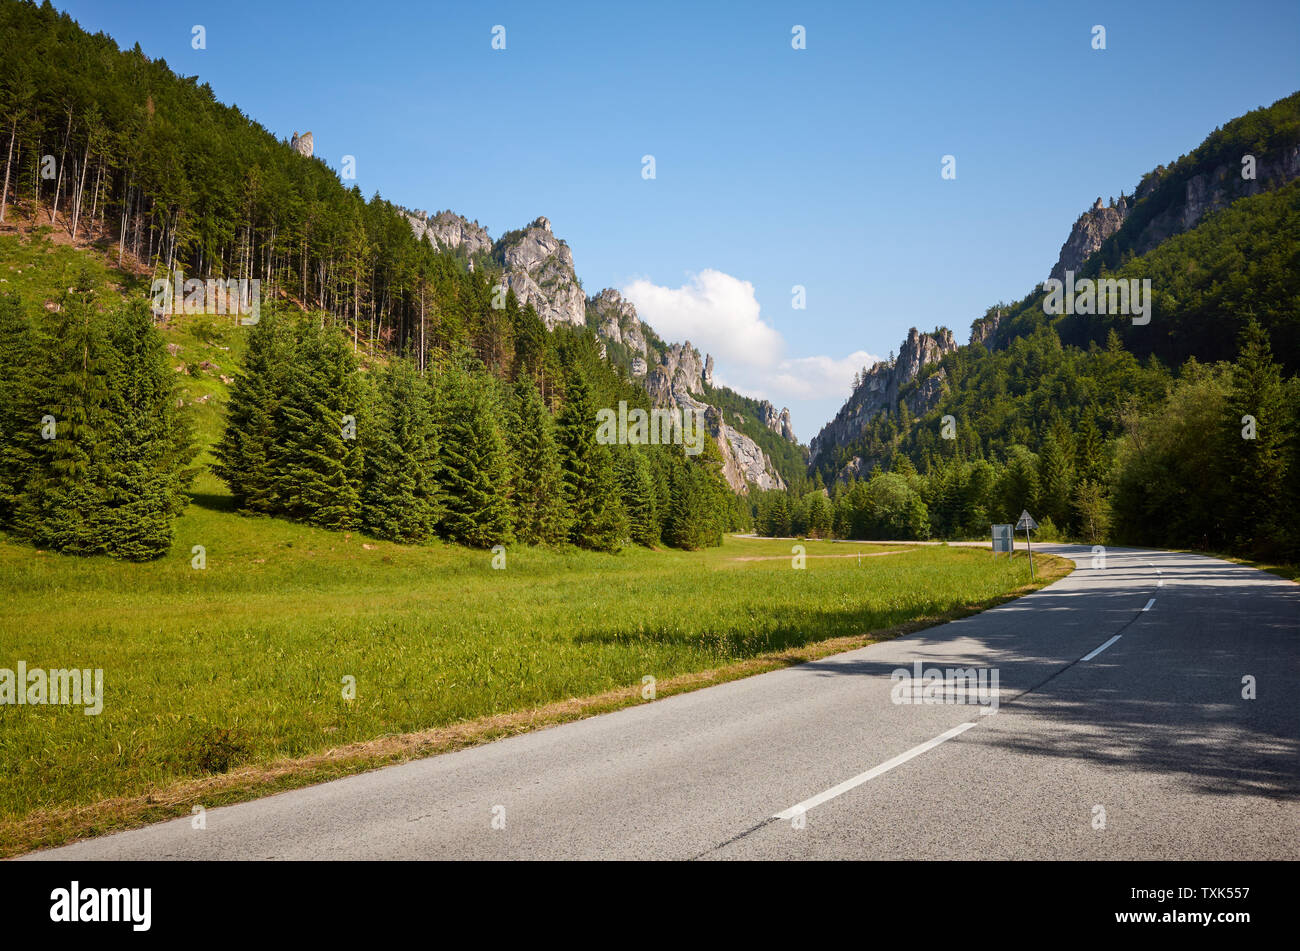 Scenic road in Mala Fatra mountains, Slovakia. Stock Photo